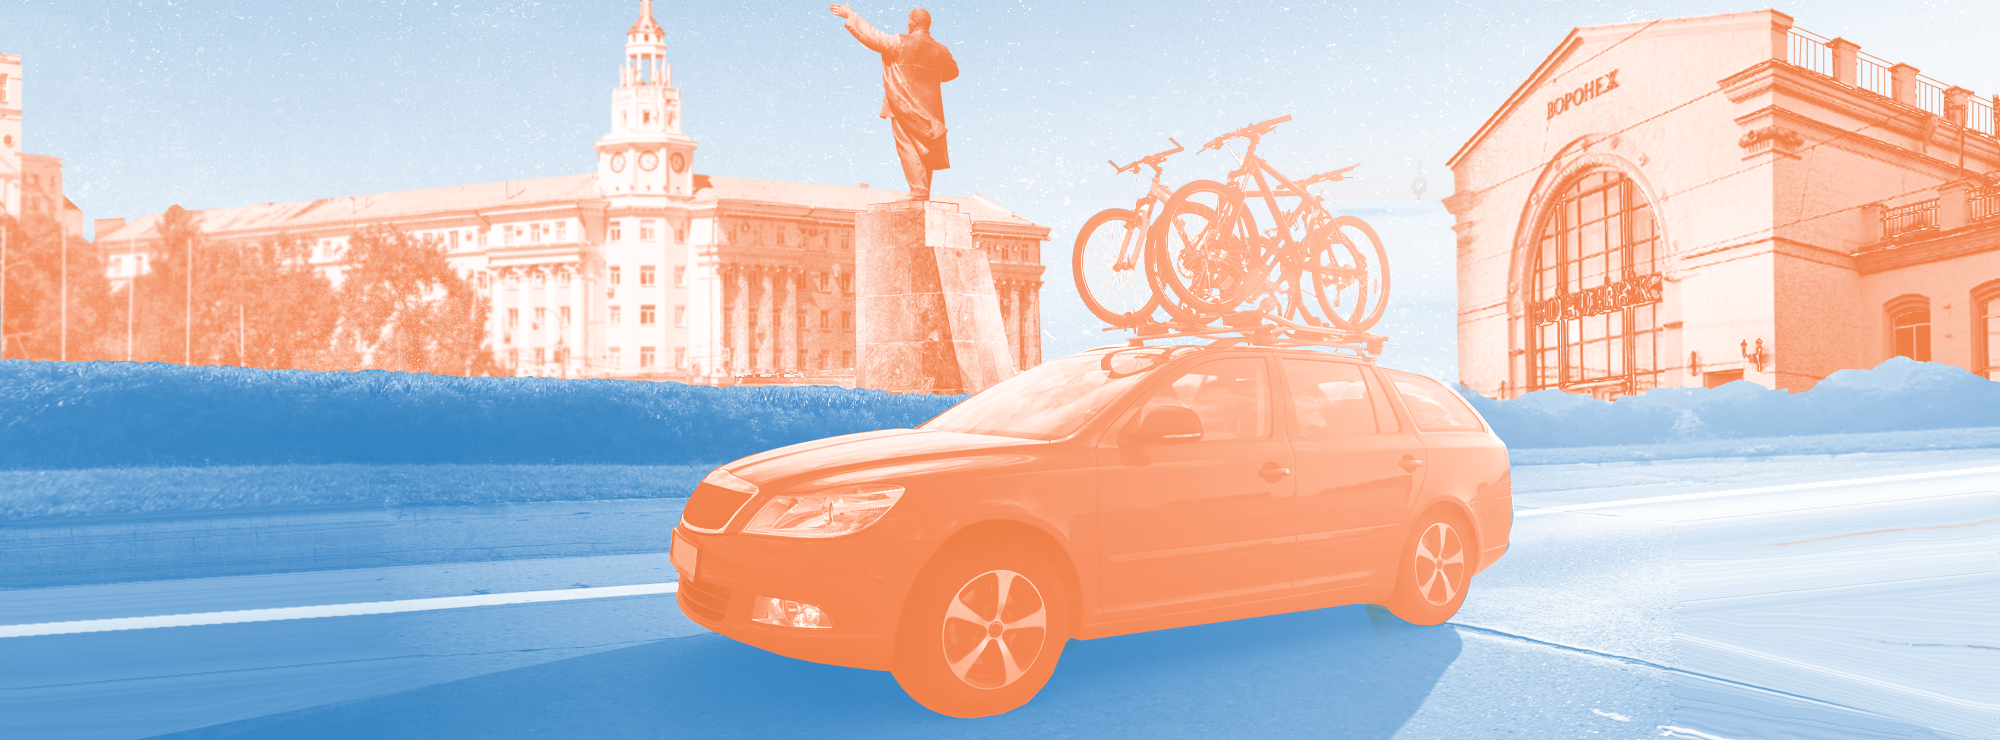 Полноразмерная обложка поста на тему: Что посмотреть в Воронеже, если путешествуете на машине